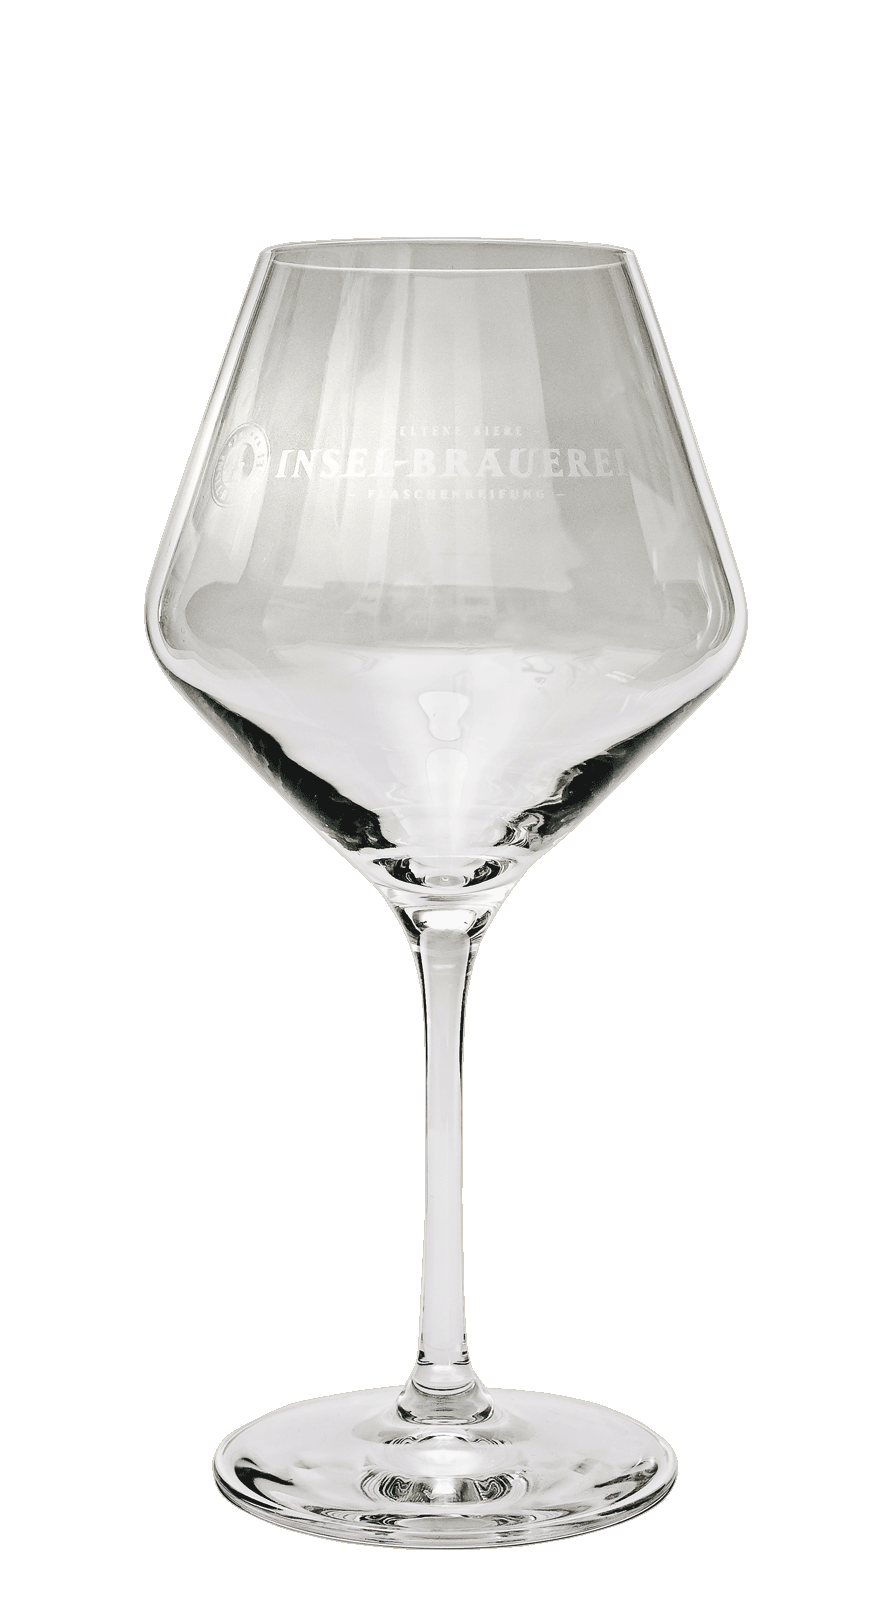 Gourmet Glass - Logo Insel-Brauerei